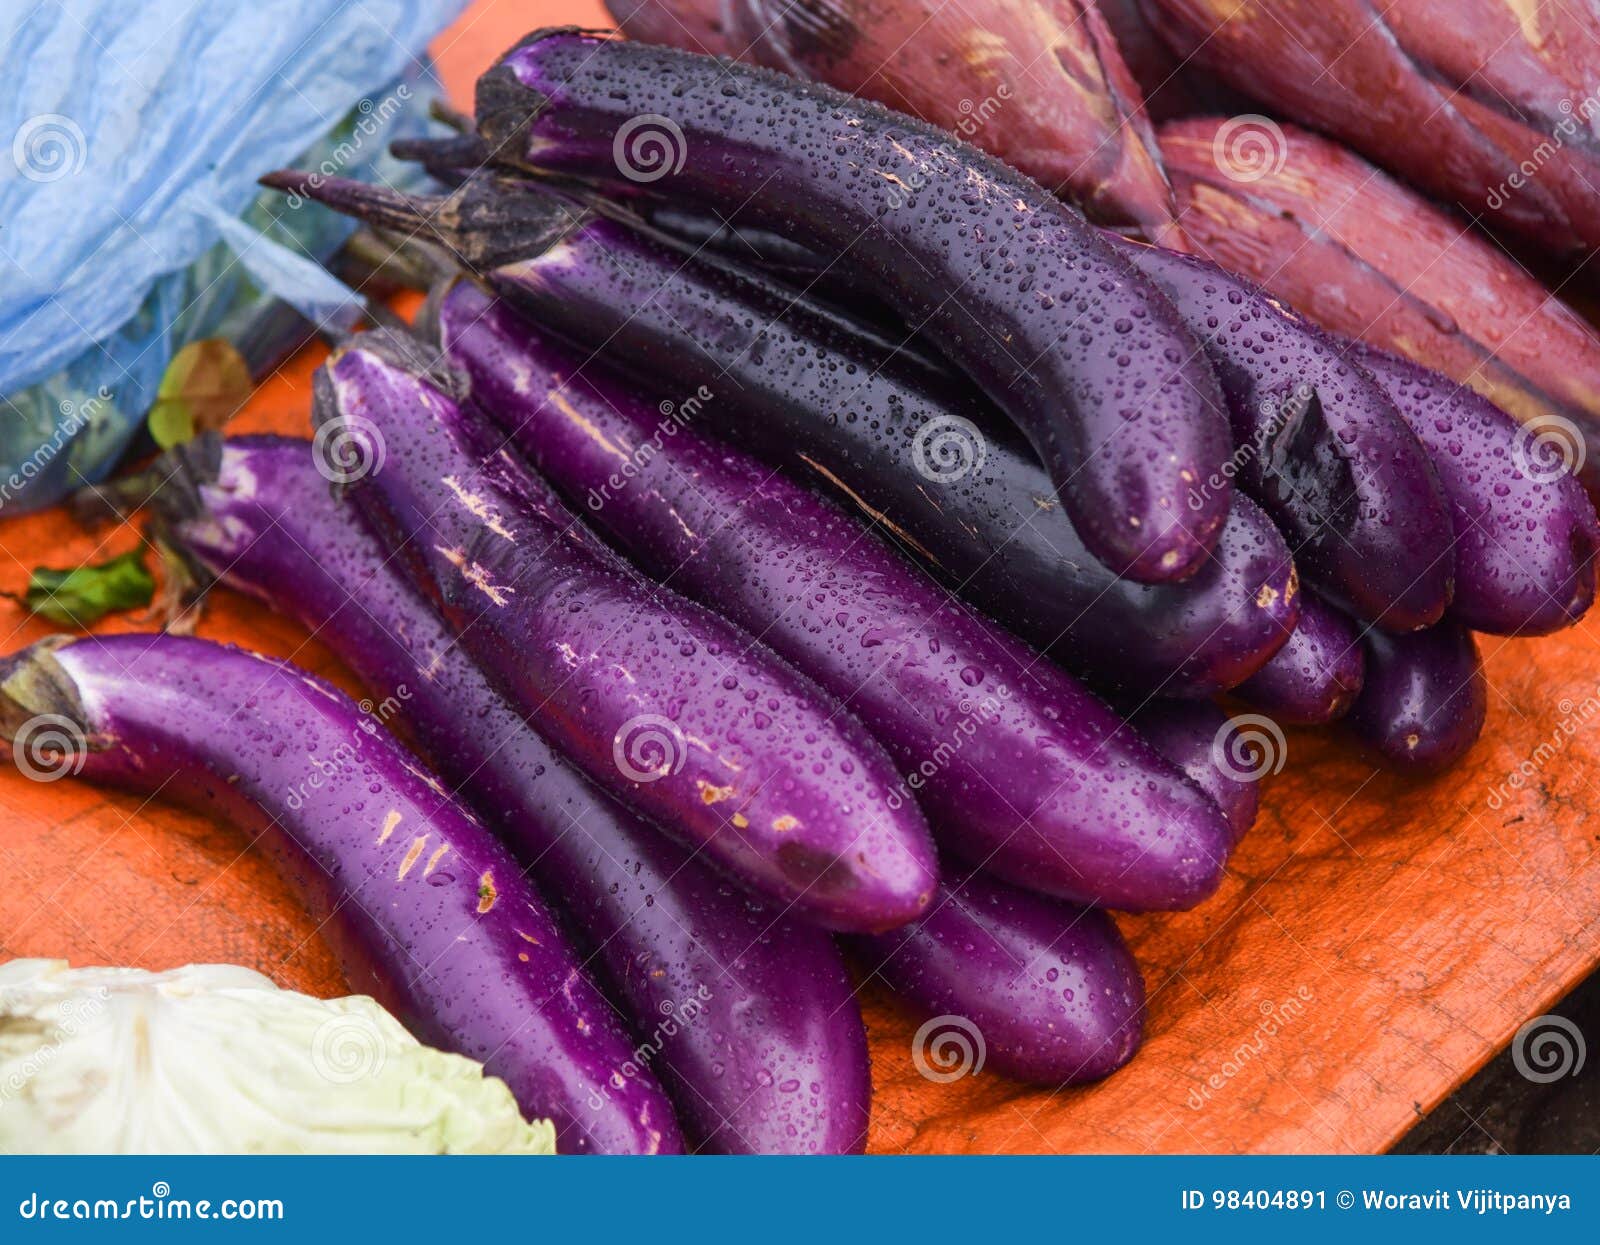 紫色营养的茄子图片3840x2160分辨率下载,紫色营养的茄子图片,高清图片,壁纸 - 天下桌面